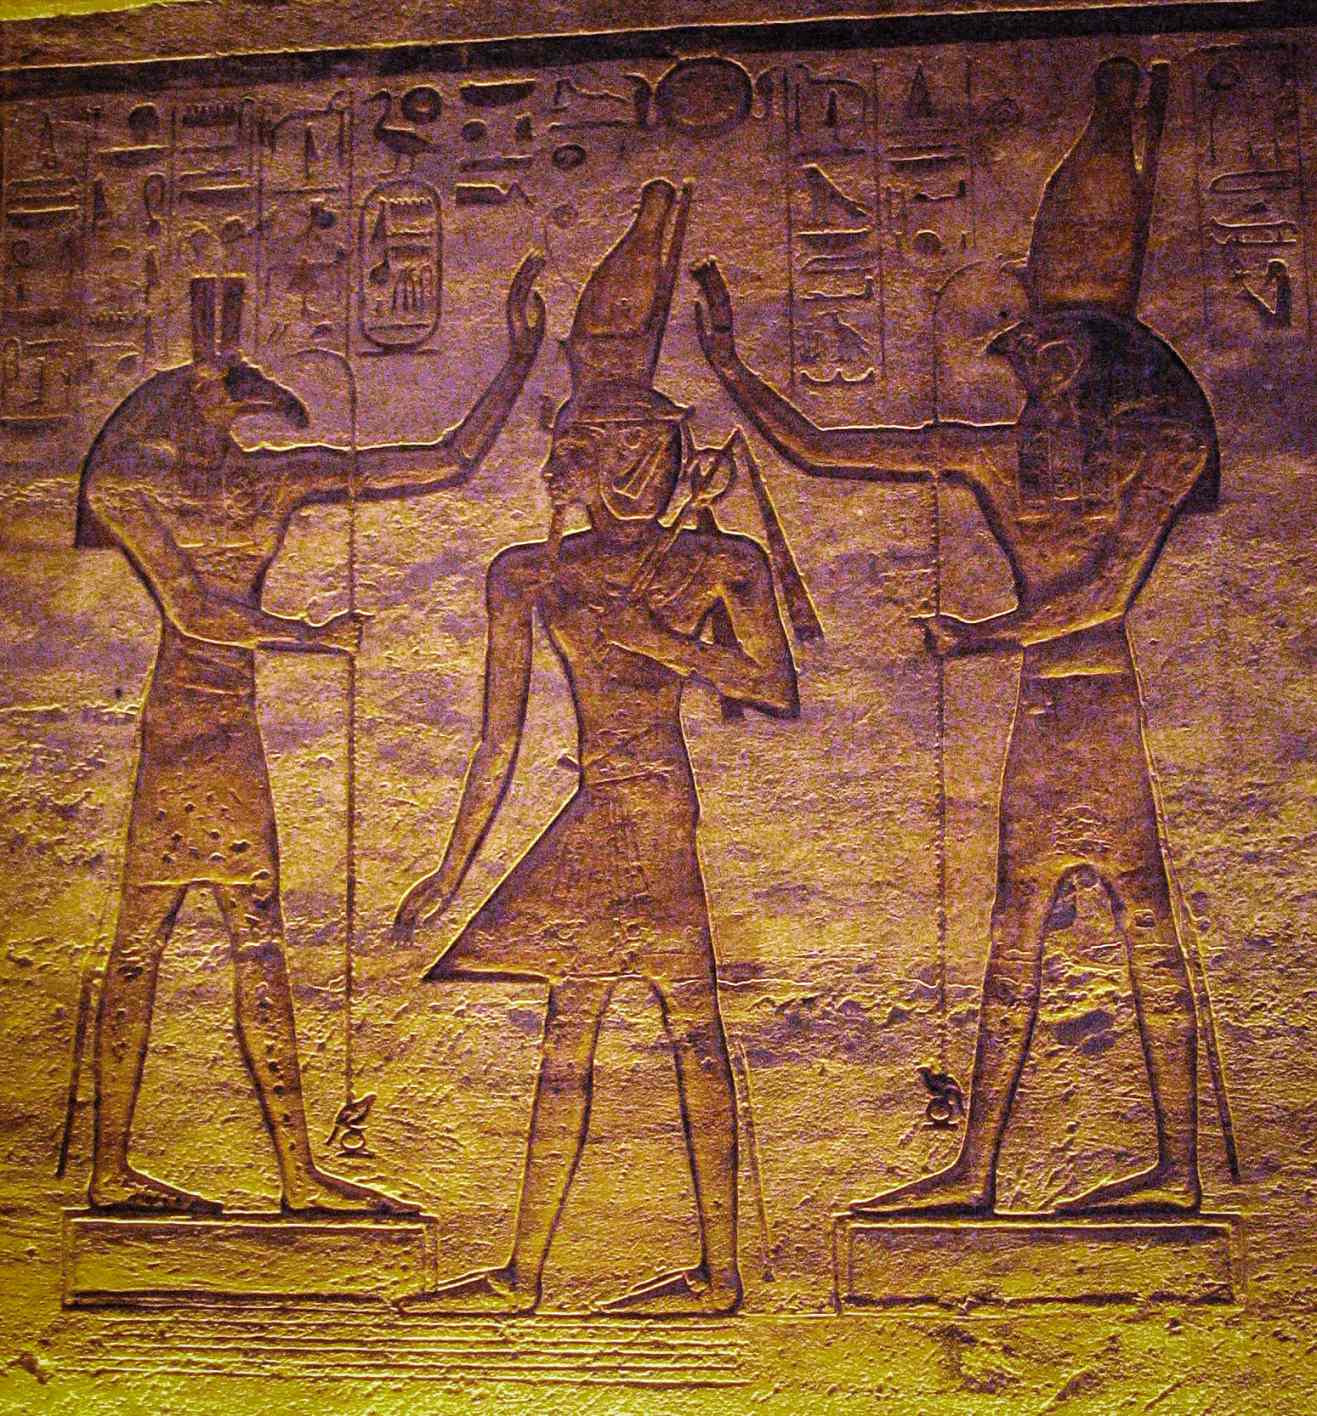 Set (Seth) an Horus adoring Ramesses. Déi aktuell Etude weist, datt de Mound duerch de Seth an de verännerleche Stär Algol vum Horus am Kairo Kalenner duergestallt ka ginn.